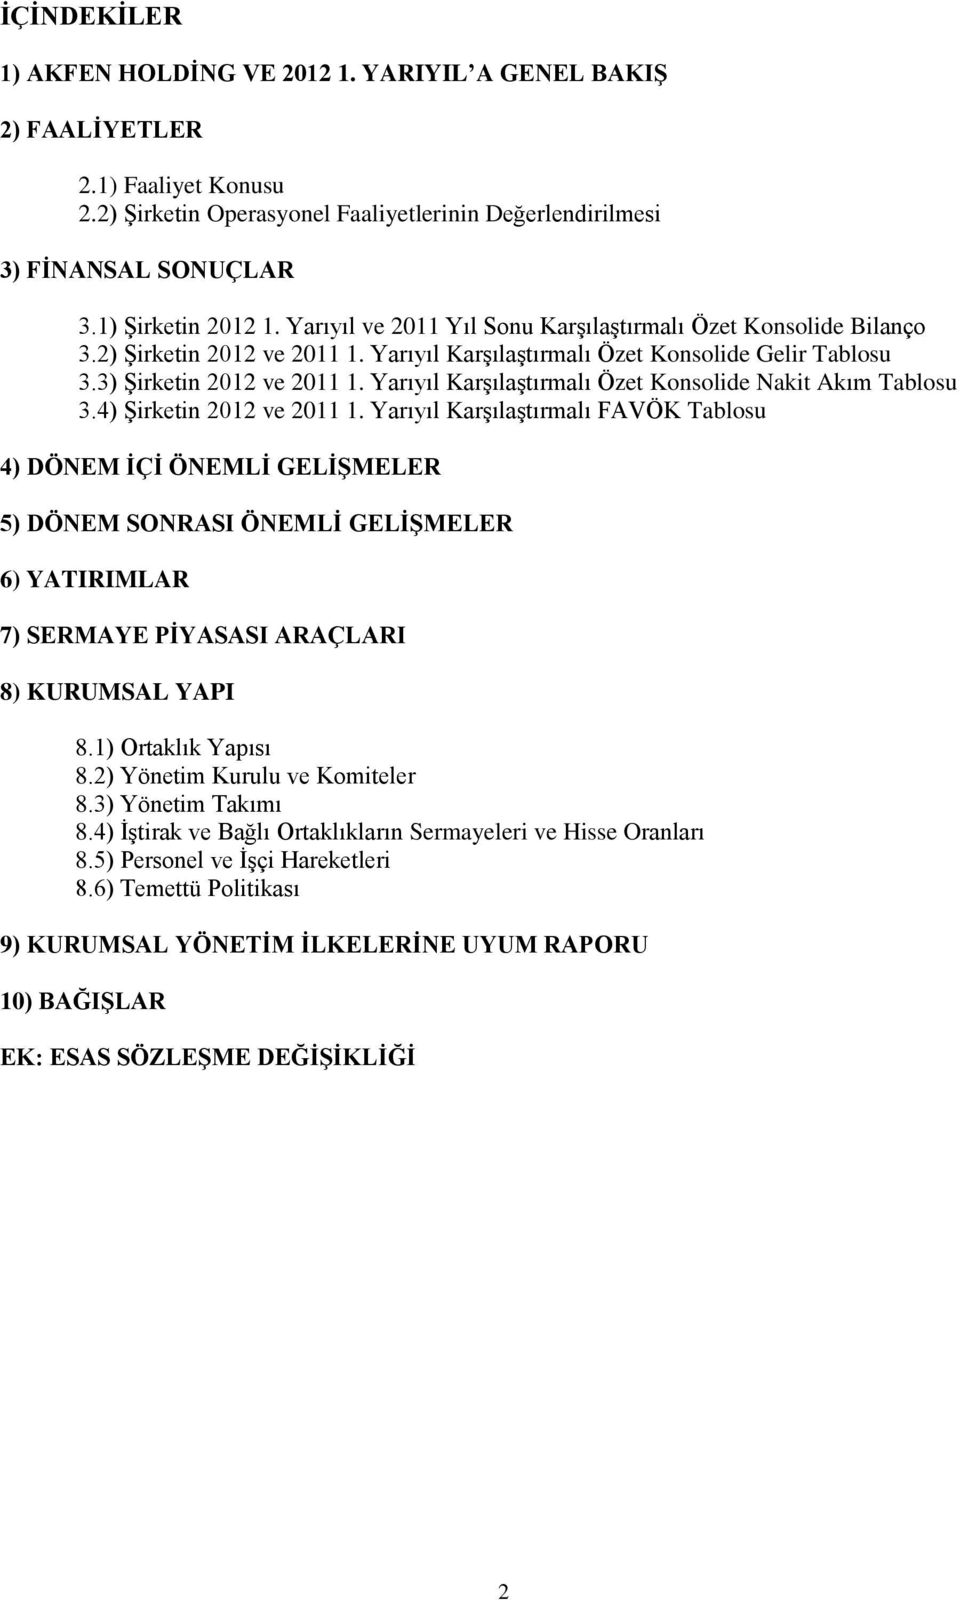 Yarıyıl Karşılaştırmalı Özet Konsolide Nakit Akım Tablosu 3.4) Şirketin 2012 ve 2011 1.